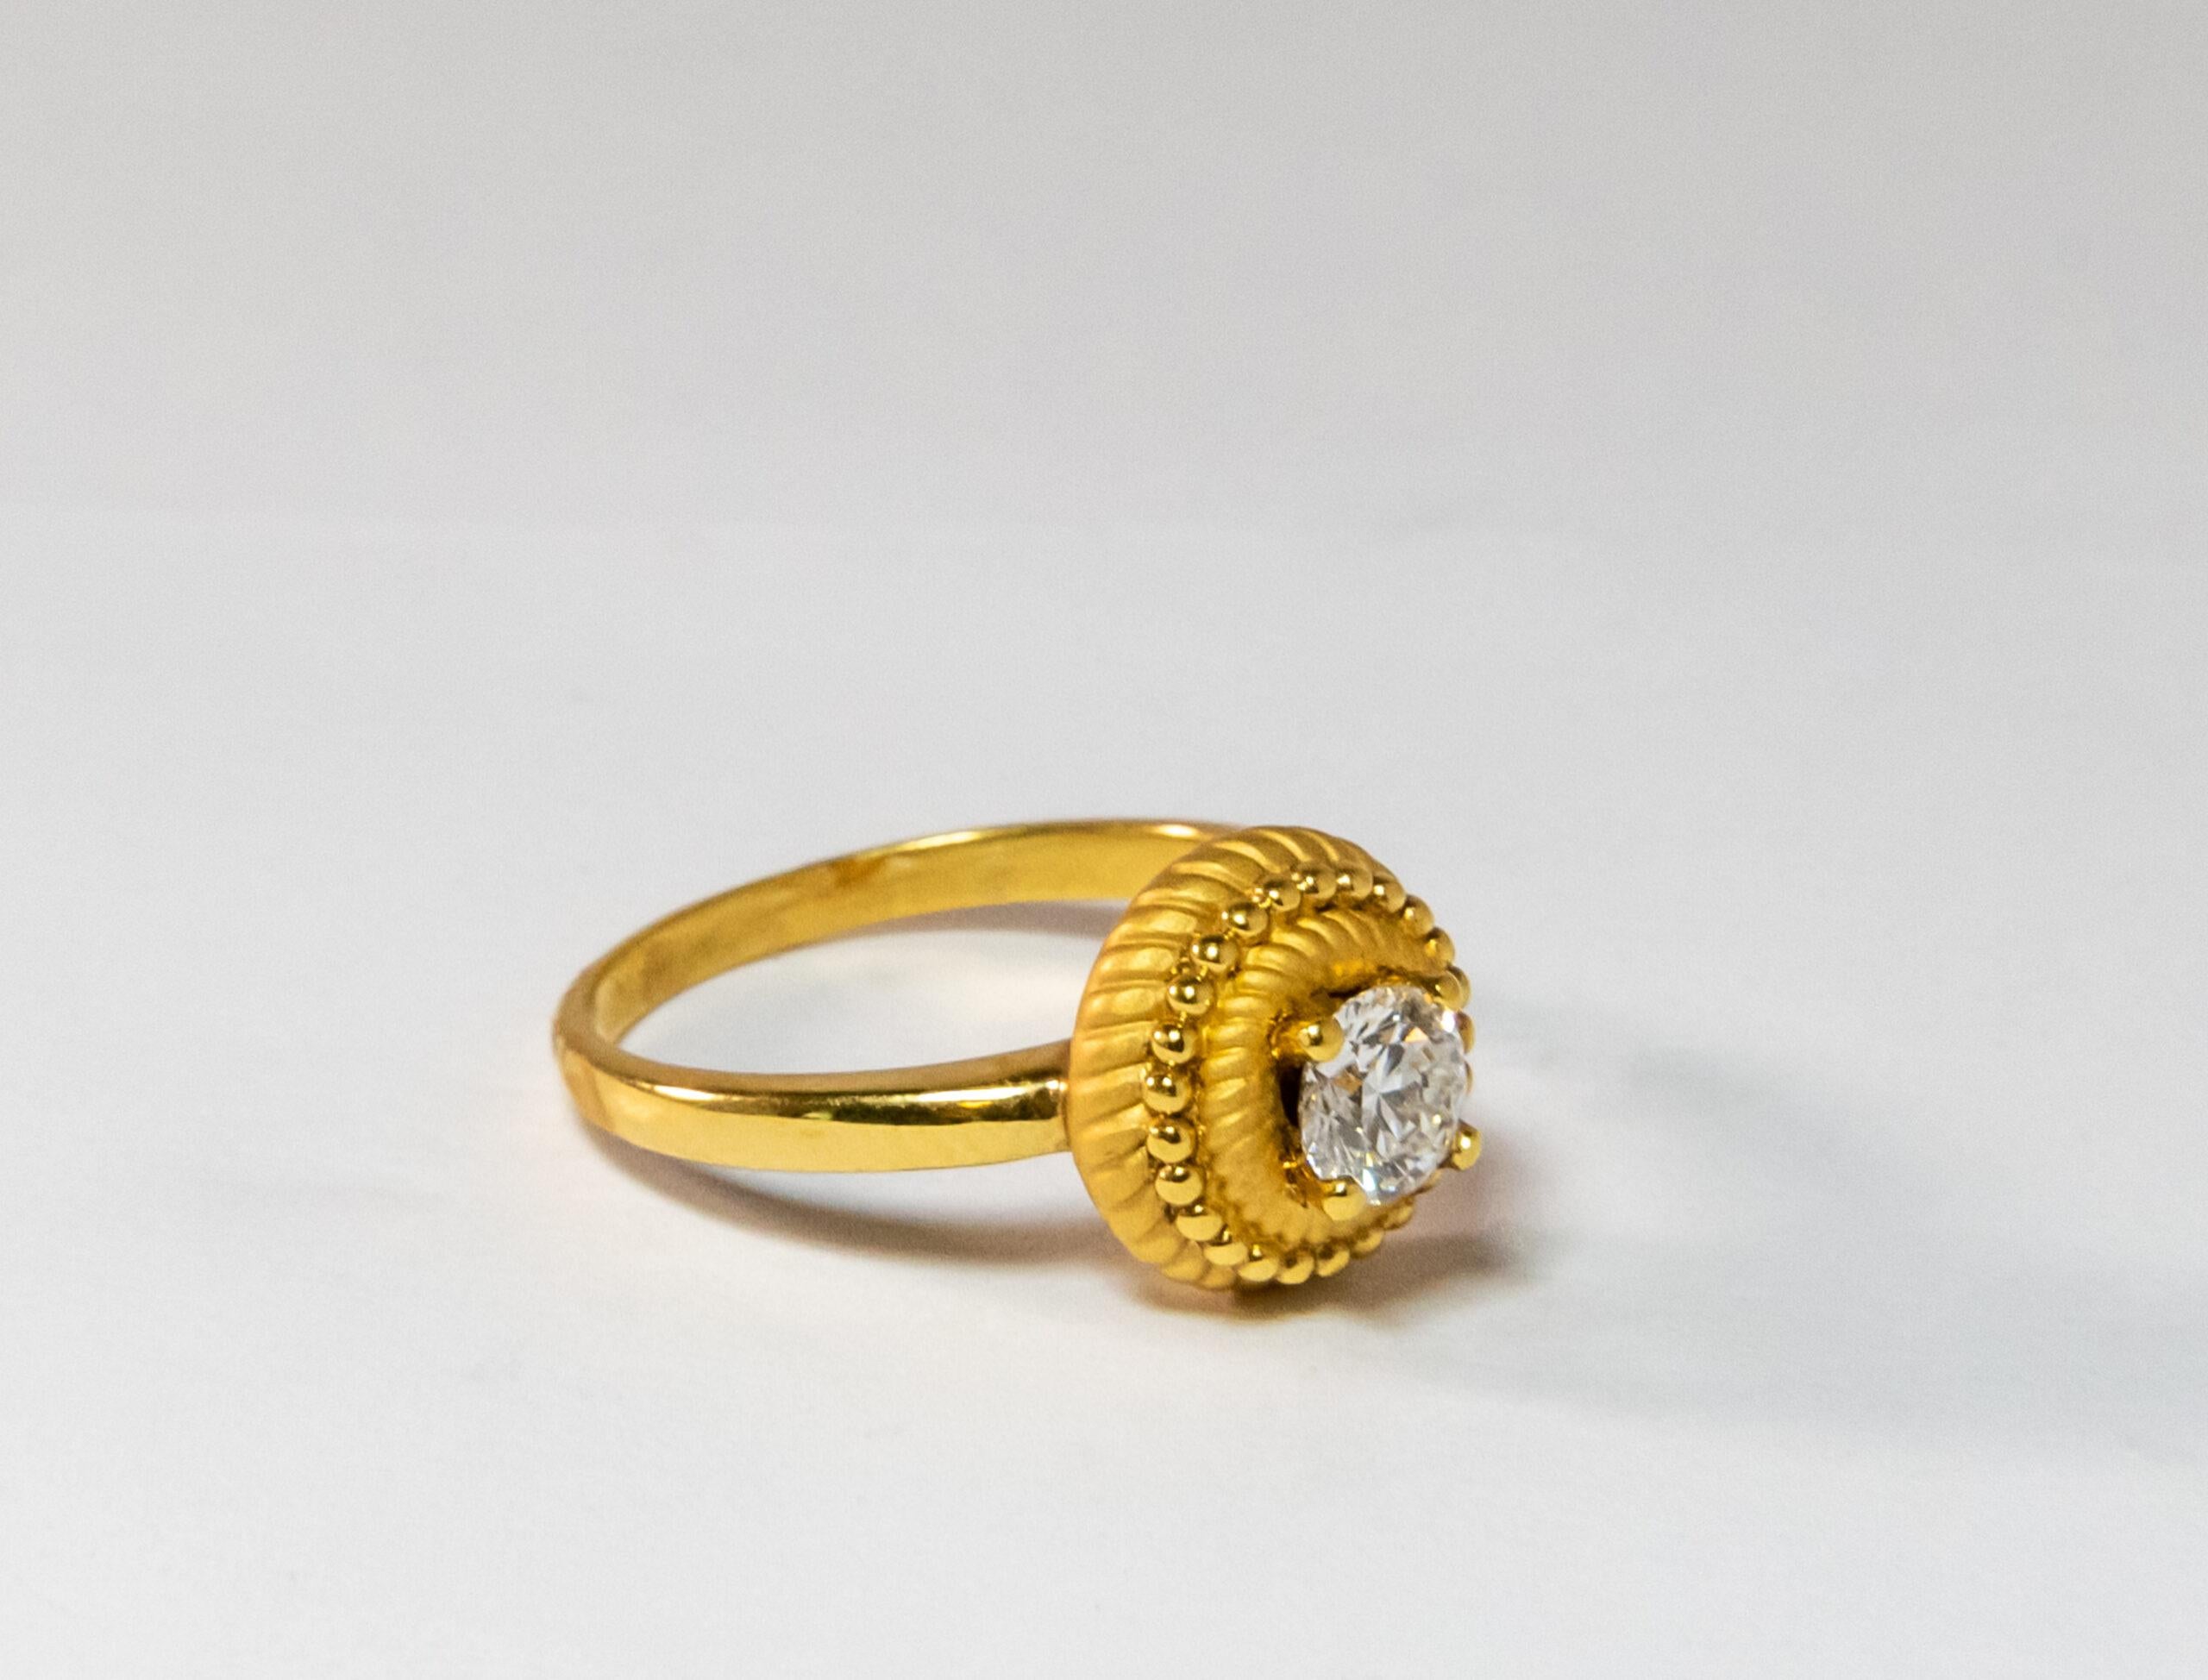 Carrara Y Carrara Pasodoble 18k Yellow Gold Diamond Ring, 10076377 In New Condition For Sale In North Miami Beach, FL